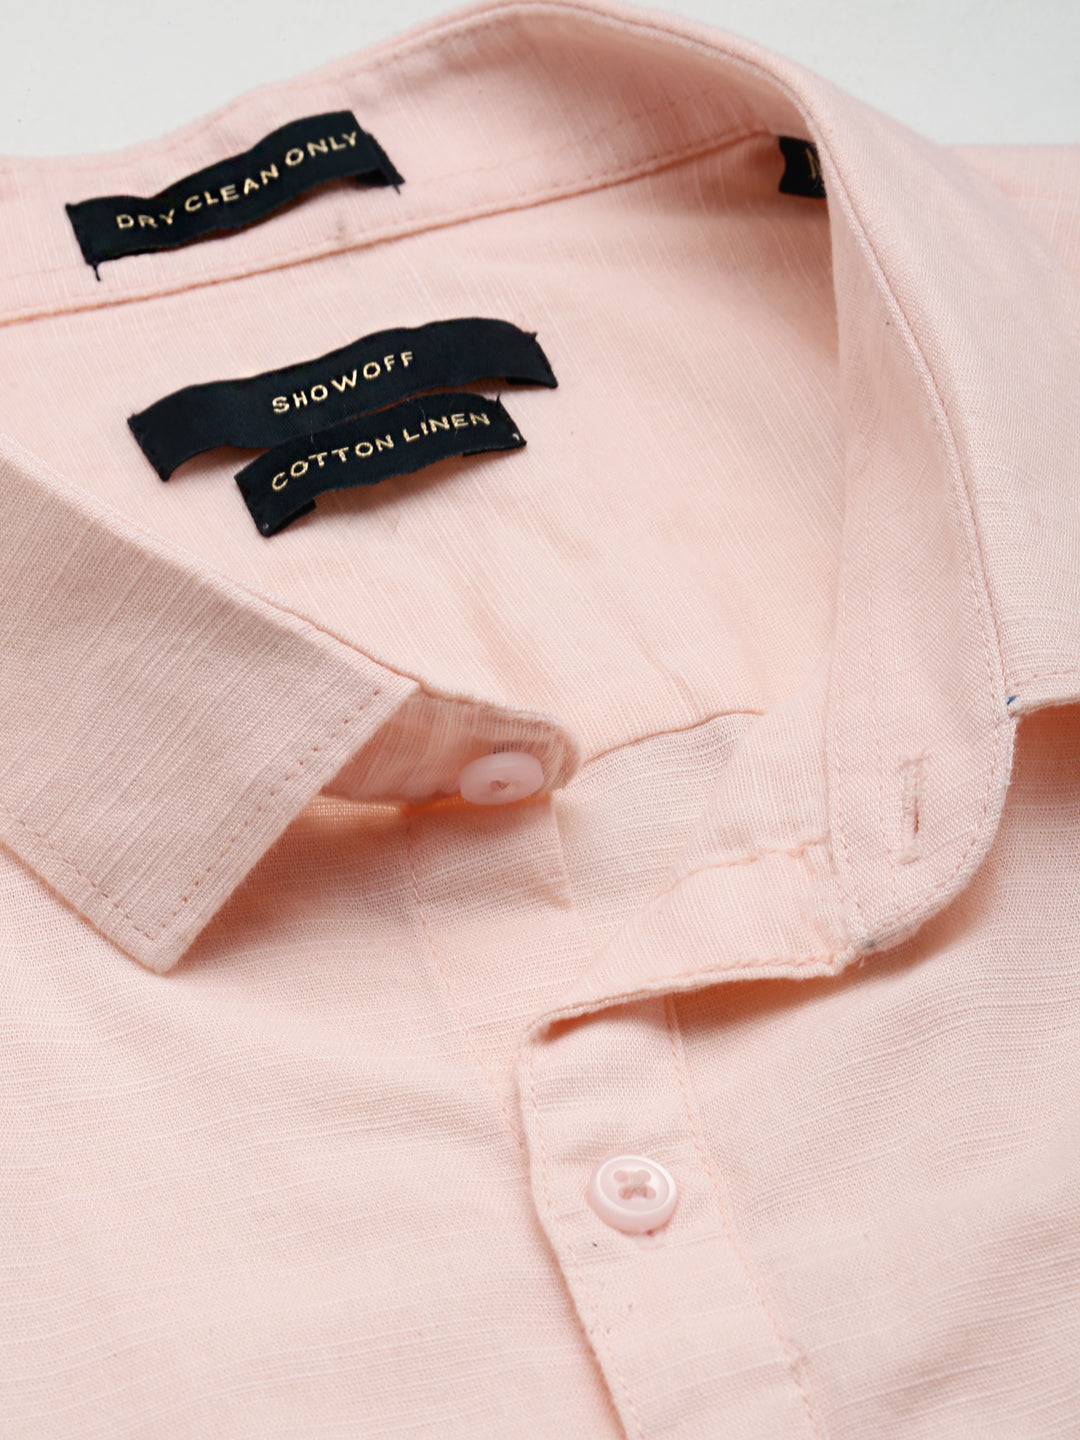 Men Peach Solid Casual Shirt